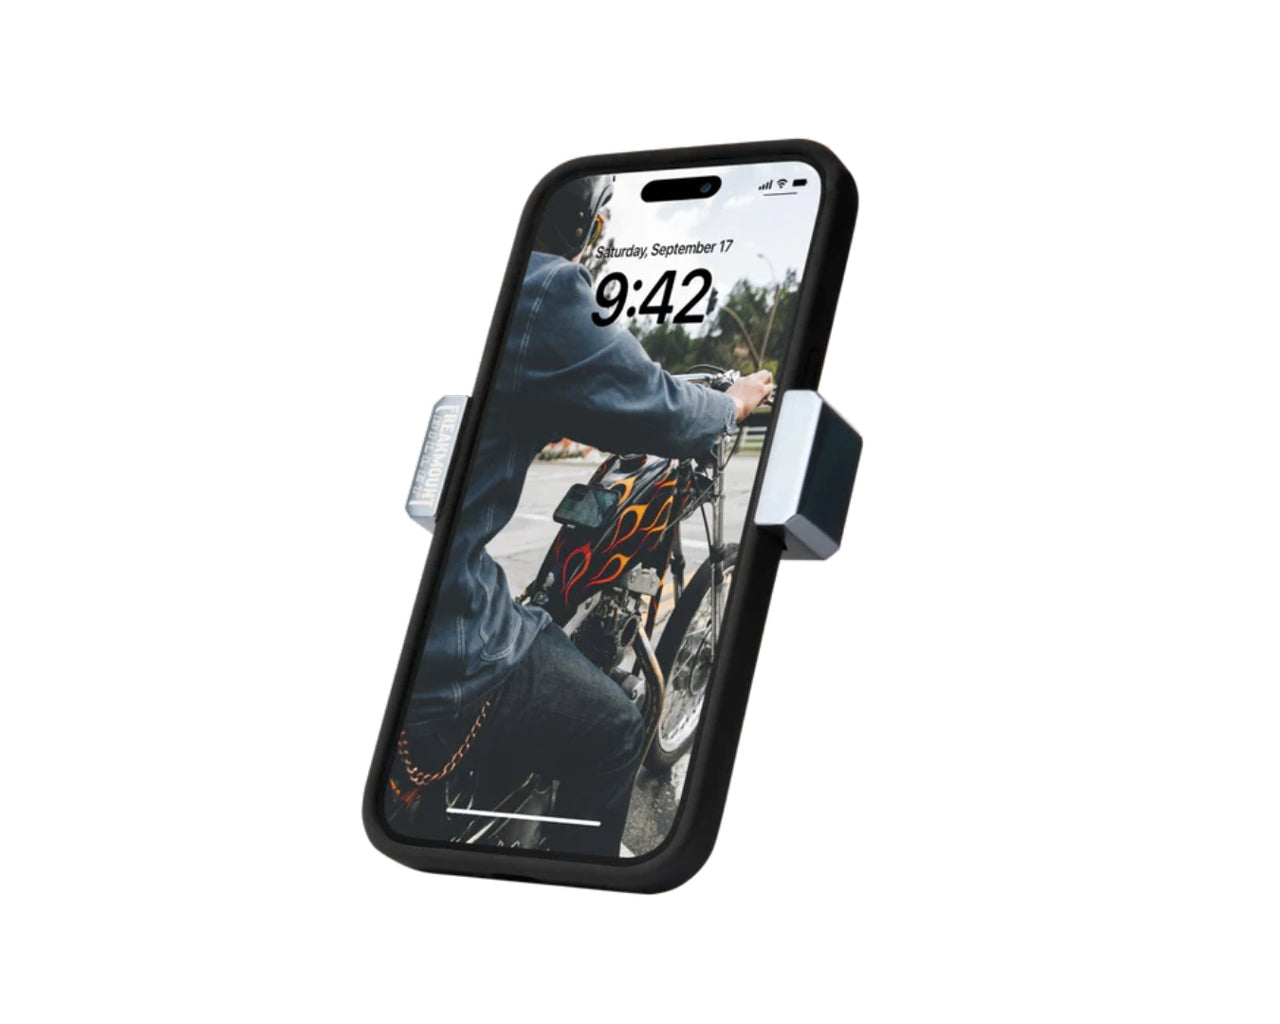 Freakmount  Billet Adjustable Motorcycle Magnetic Cell Phone Holder - BLUE